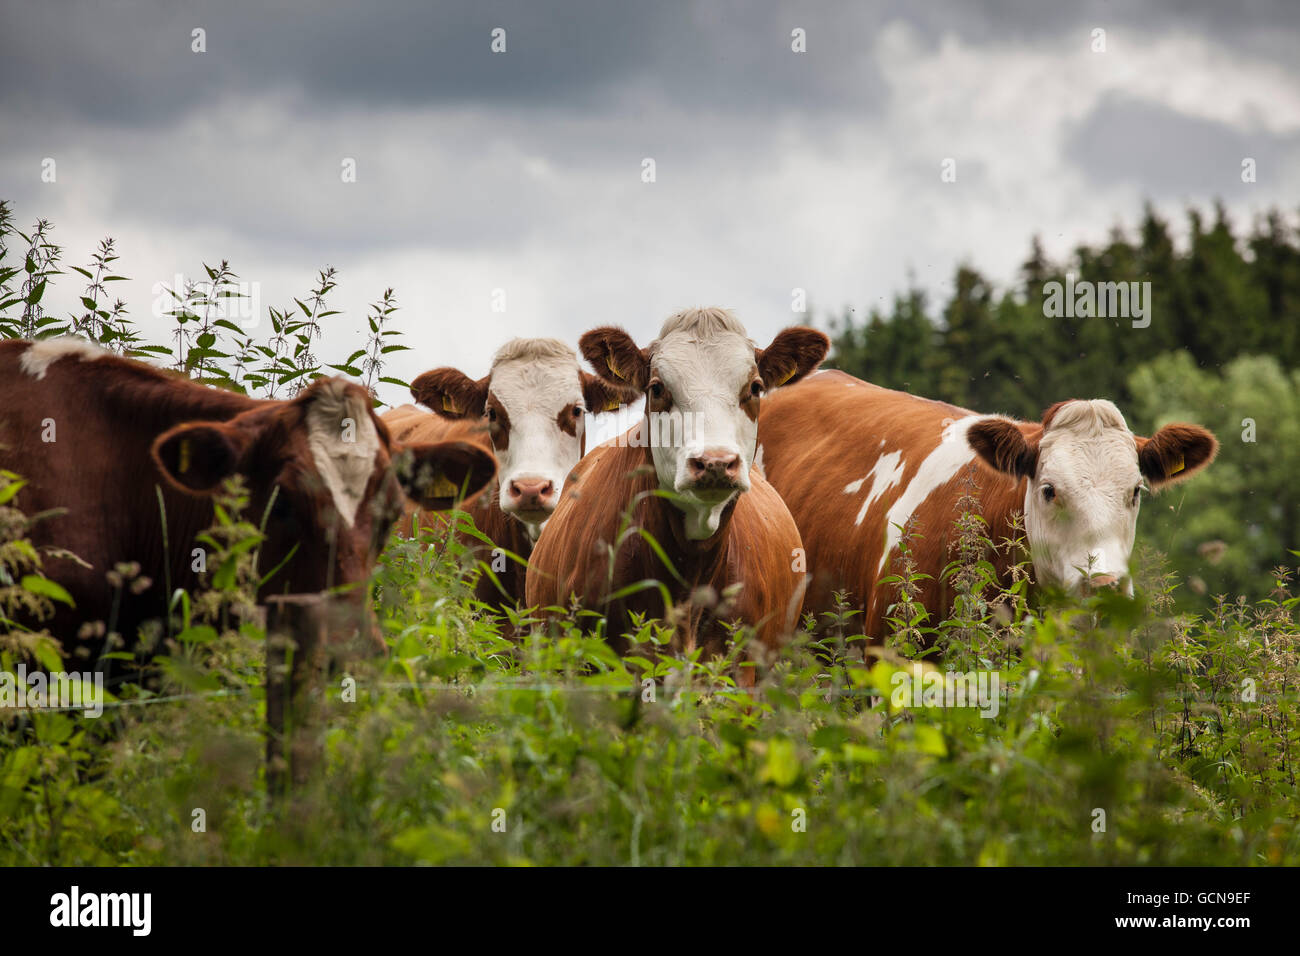 L'Europe, l'Allemagne, en Rhénanie du Nord-Westphalie, région du Bas Rhin, du bétail sur un pâturage près de Hellenthal, région de l'Eifel. Banque D'Images